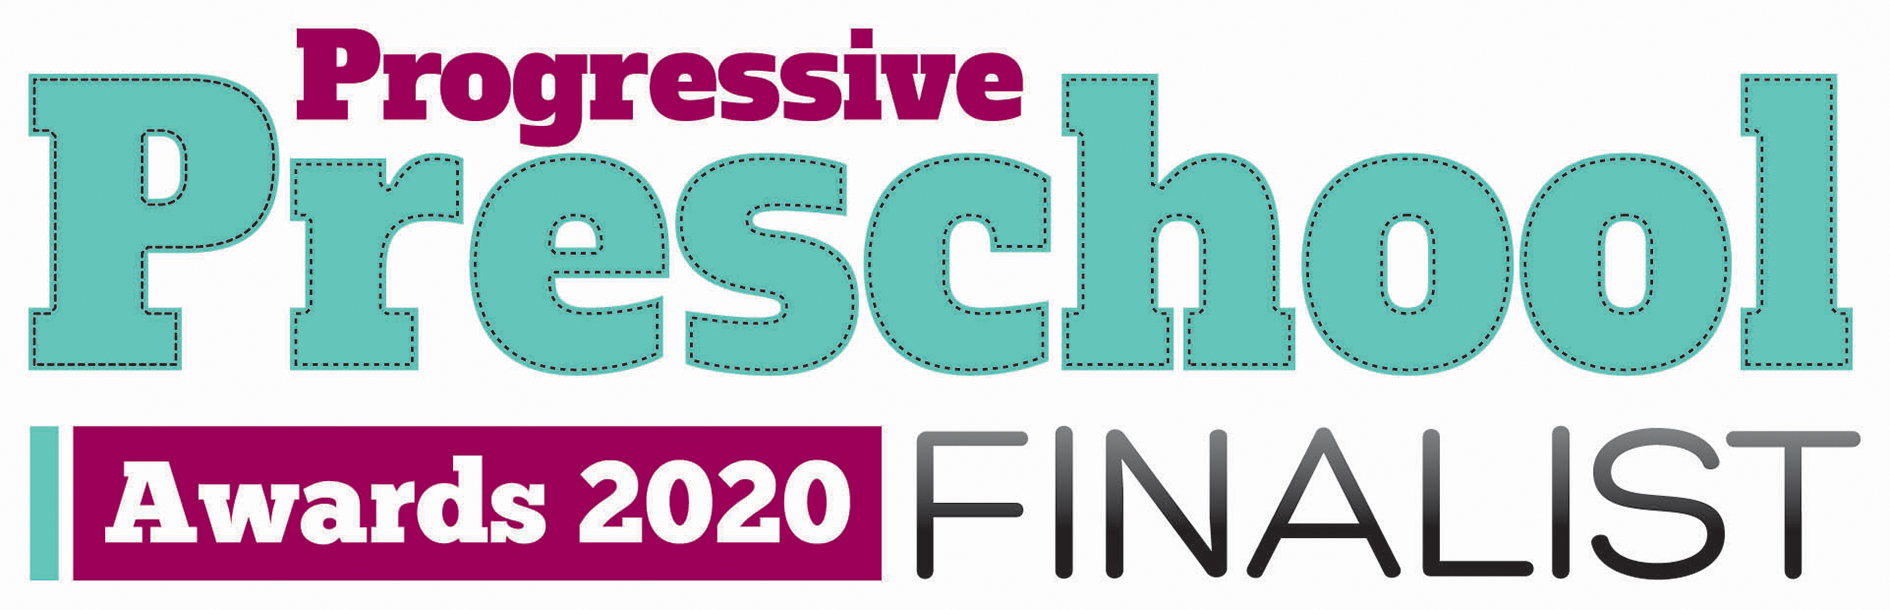 2020 pps finalist logo